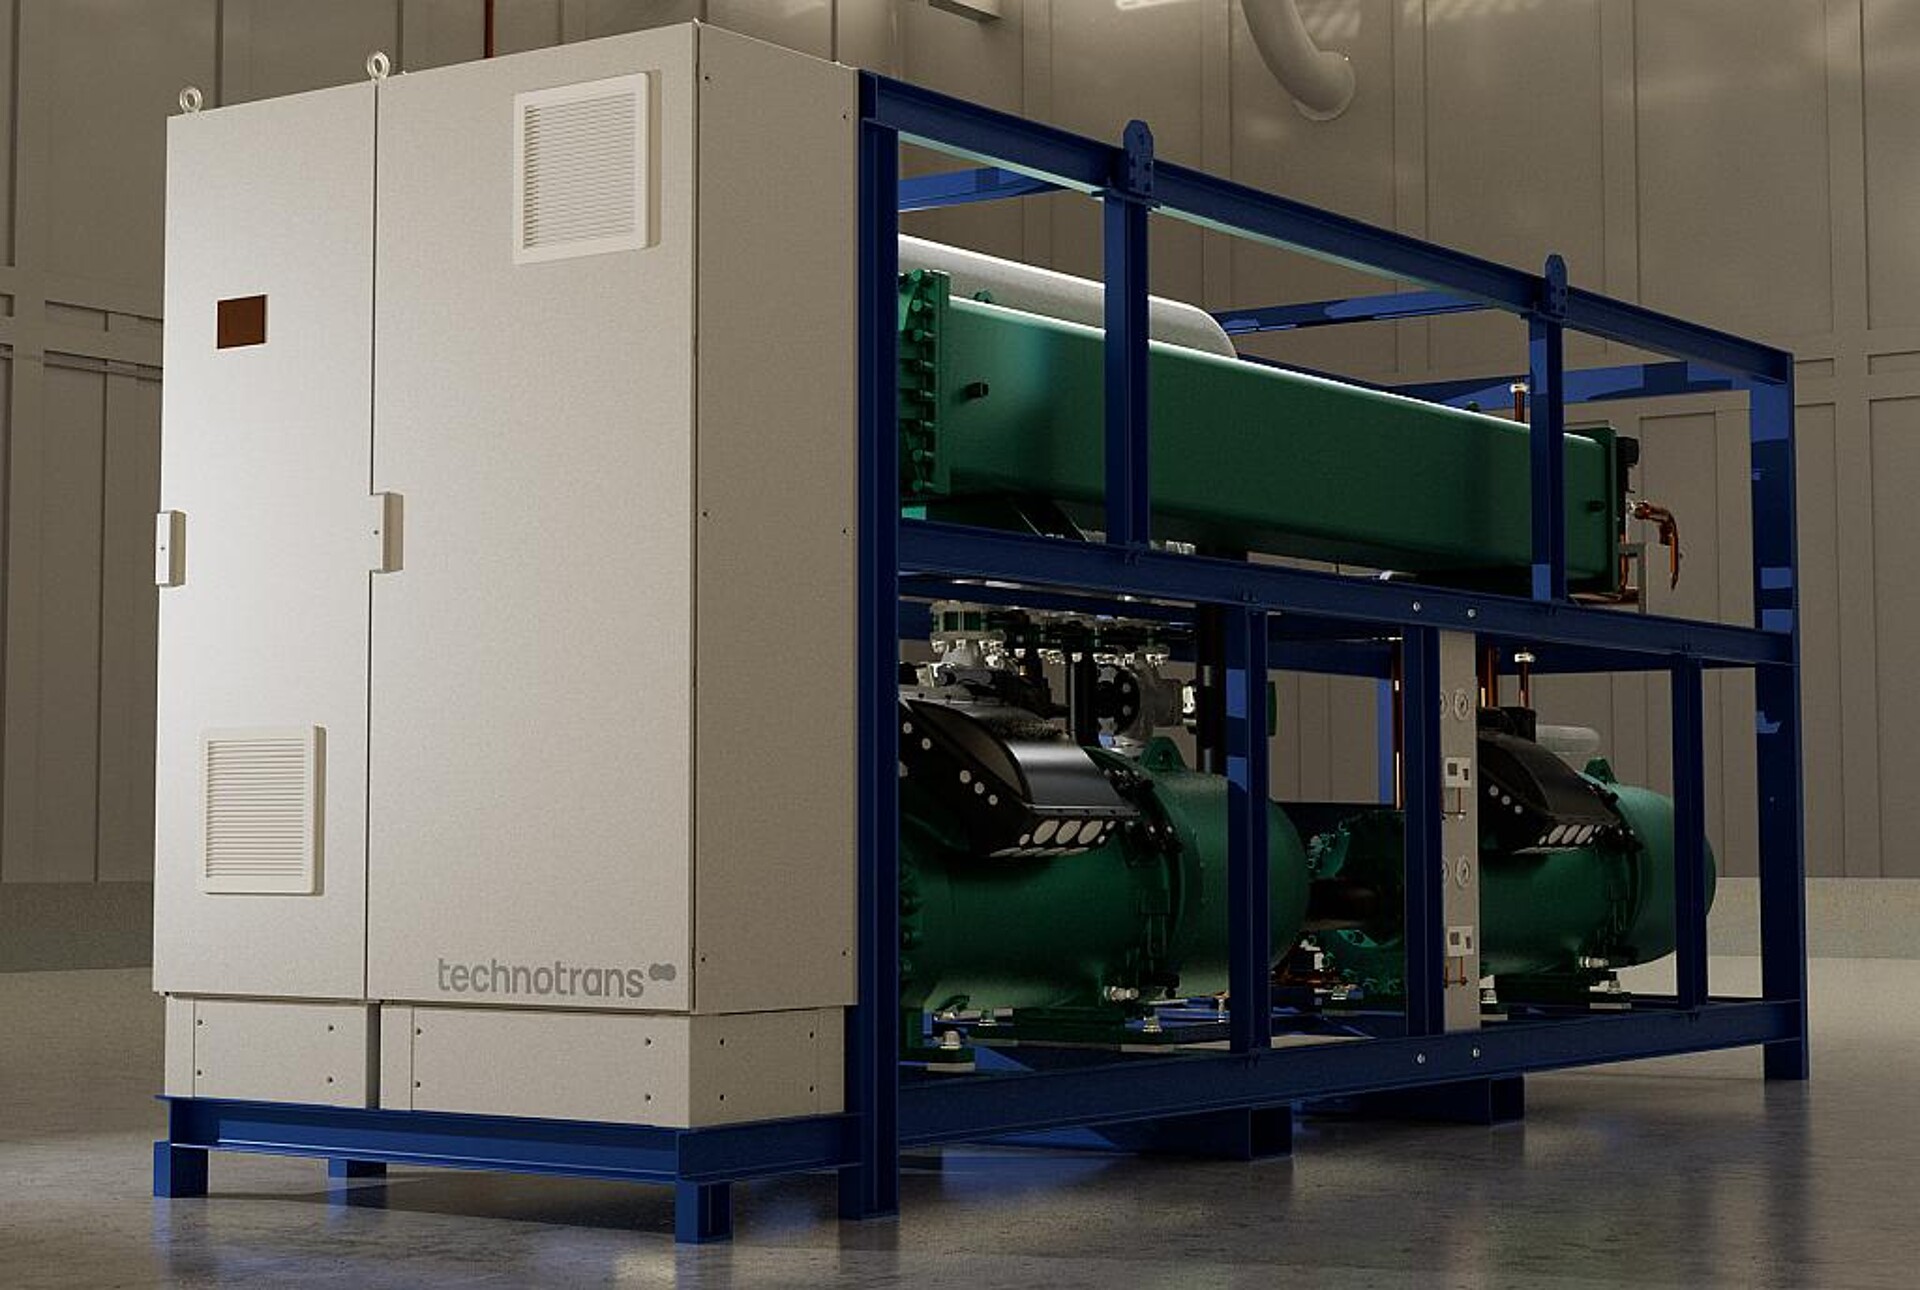 Die leistungsstarken Kühlanlagen verringern den Energiebedarf und den CO2-Footprint. (Foto: technotrans)